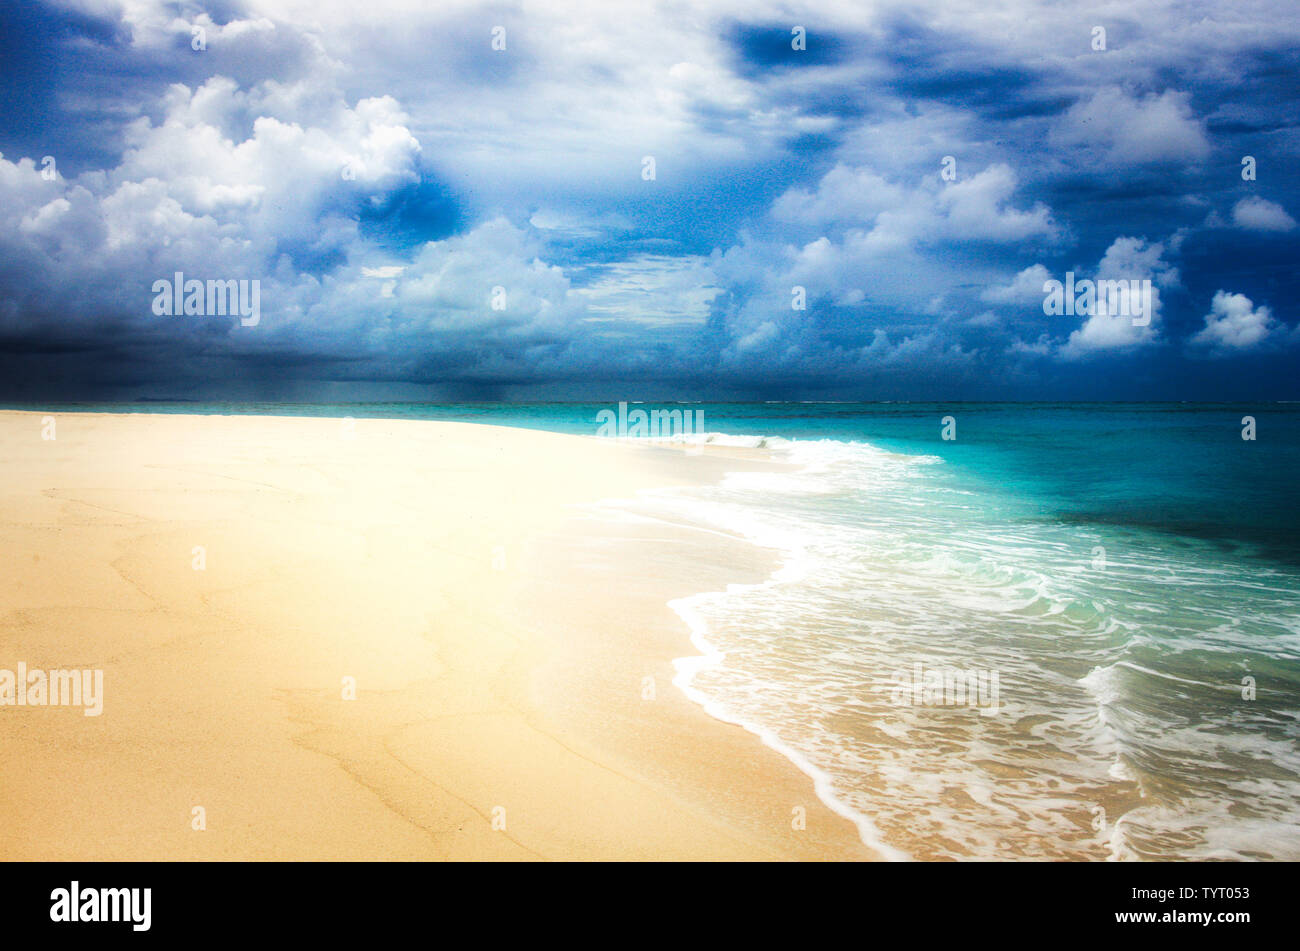 Tropische Insel mit einem paradiesischen Strand und Palmen, Fidschi Inseln Stockfoto